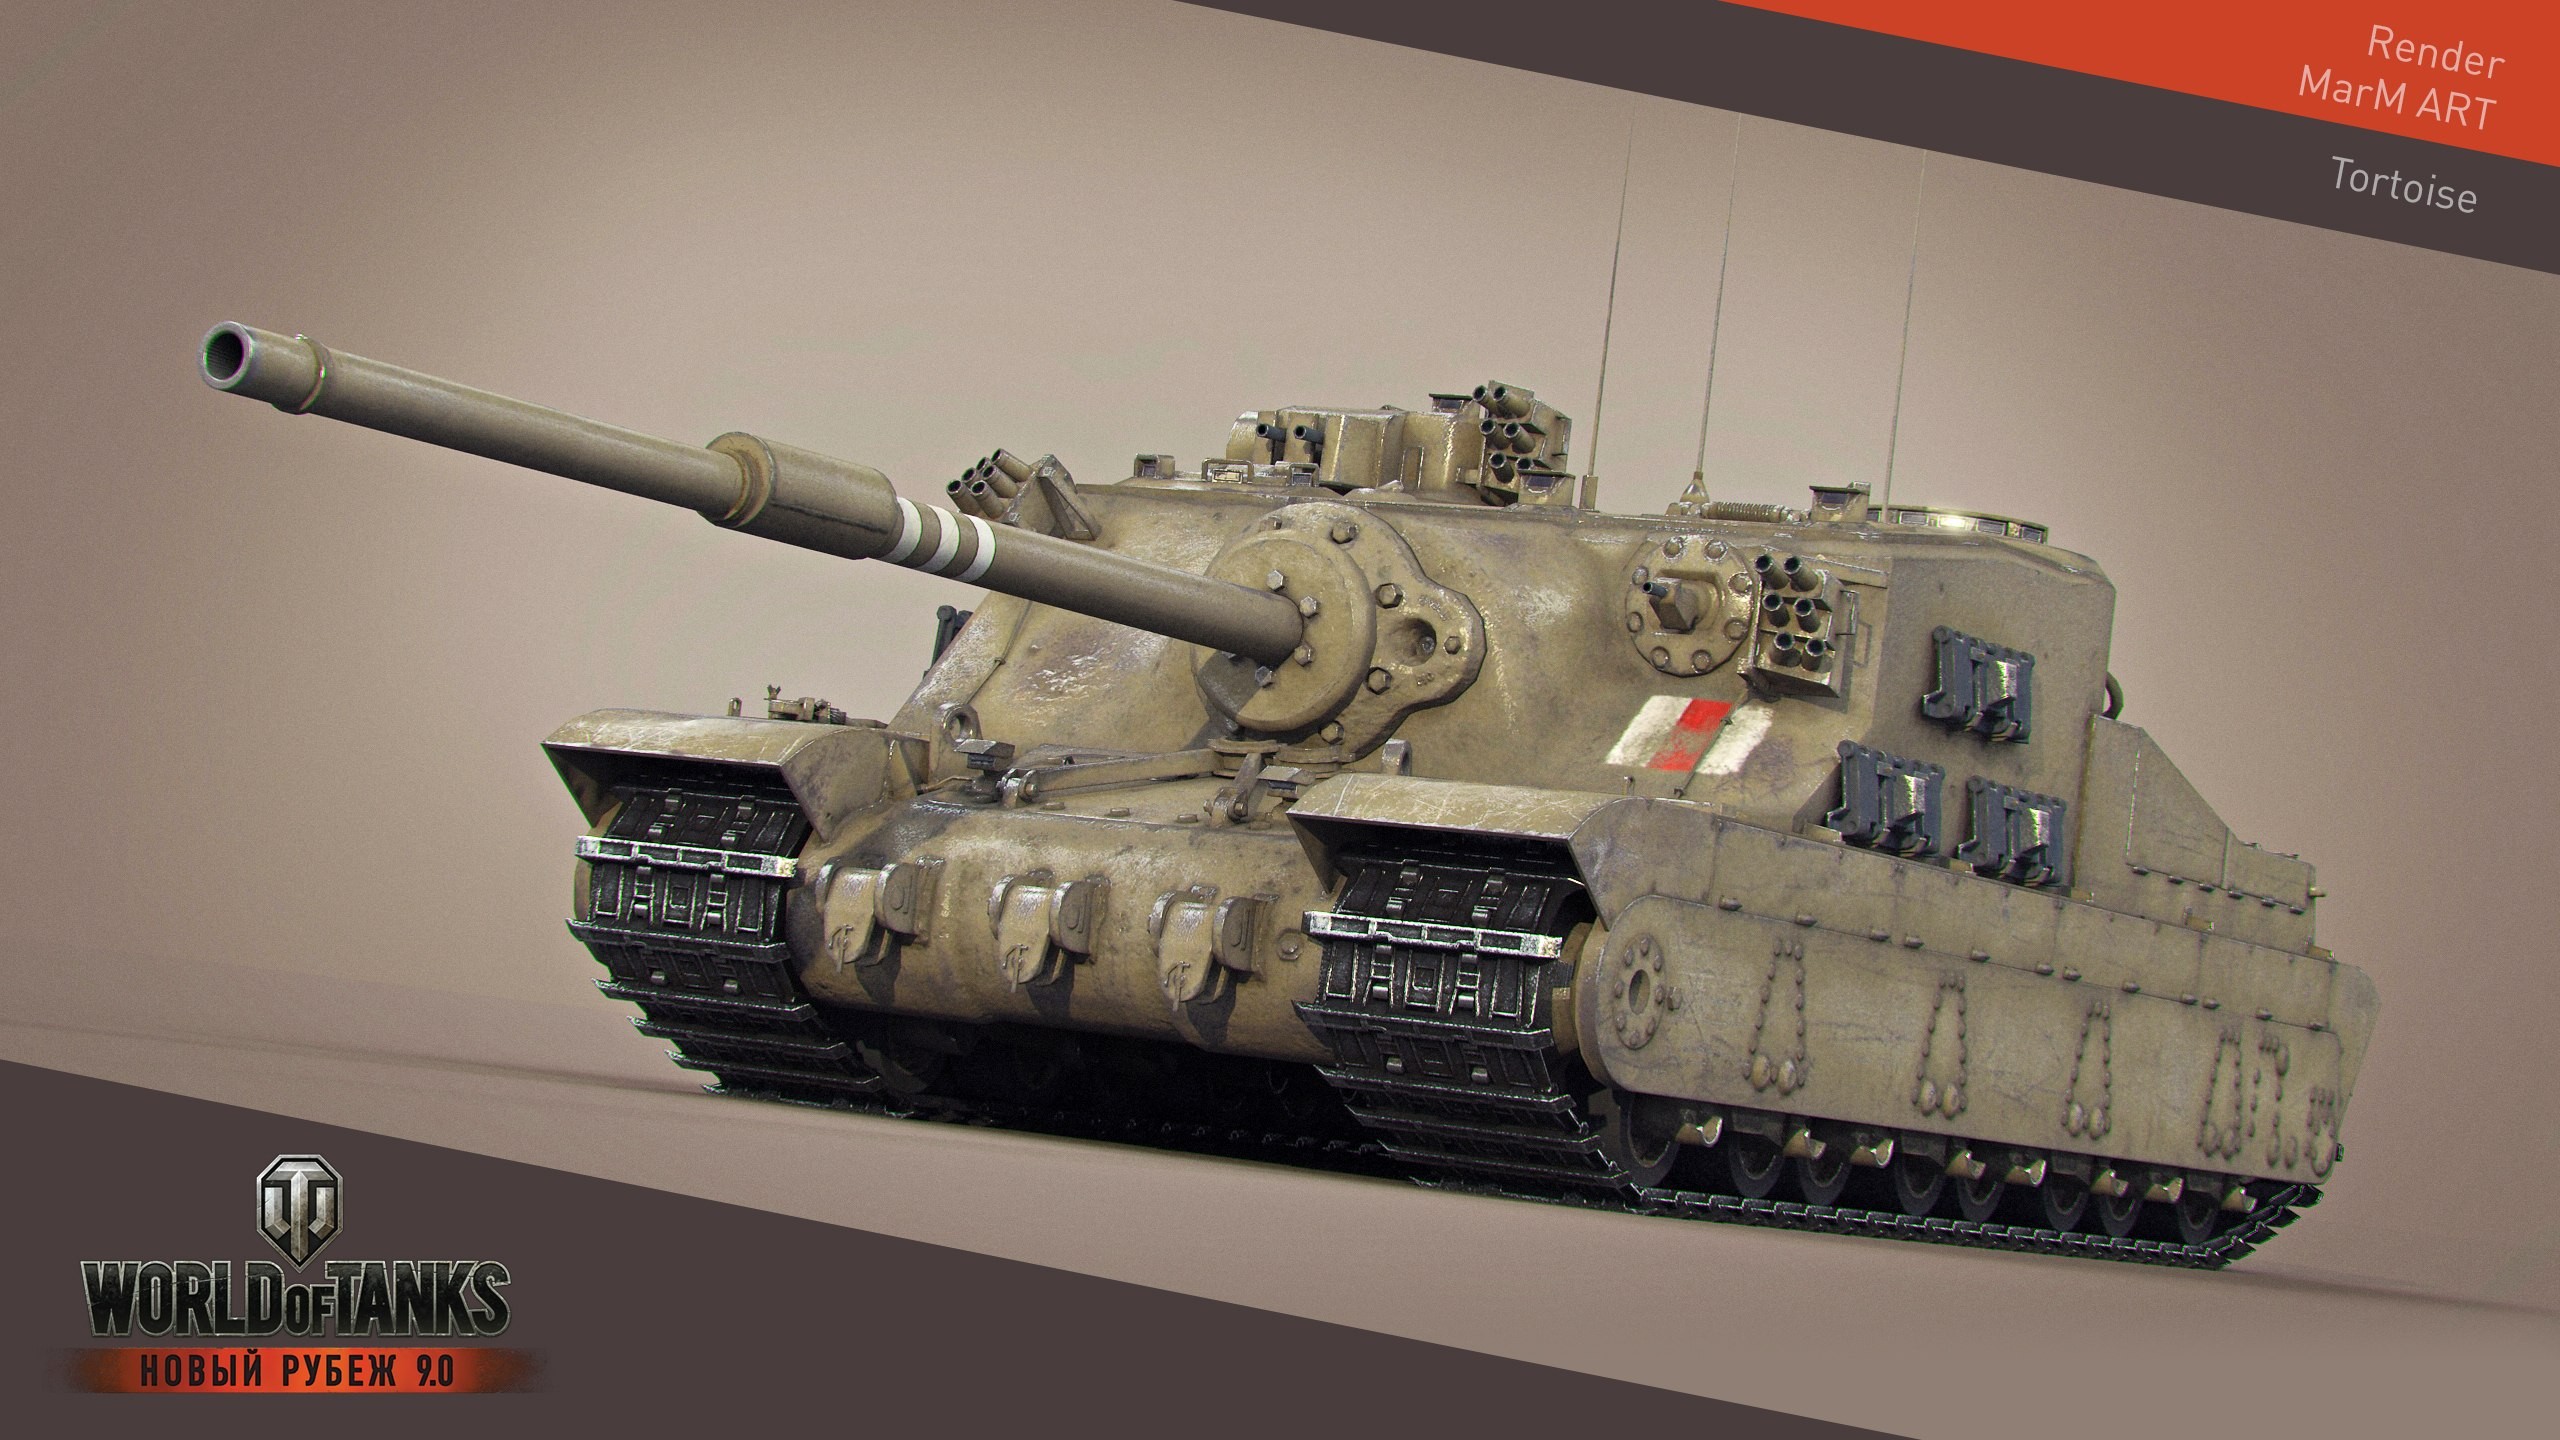 General 2560x1440 World of Tanks tank wargaming video games British tanks Tank hunter